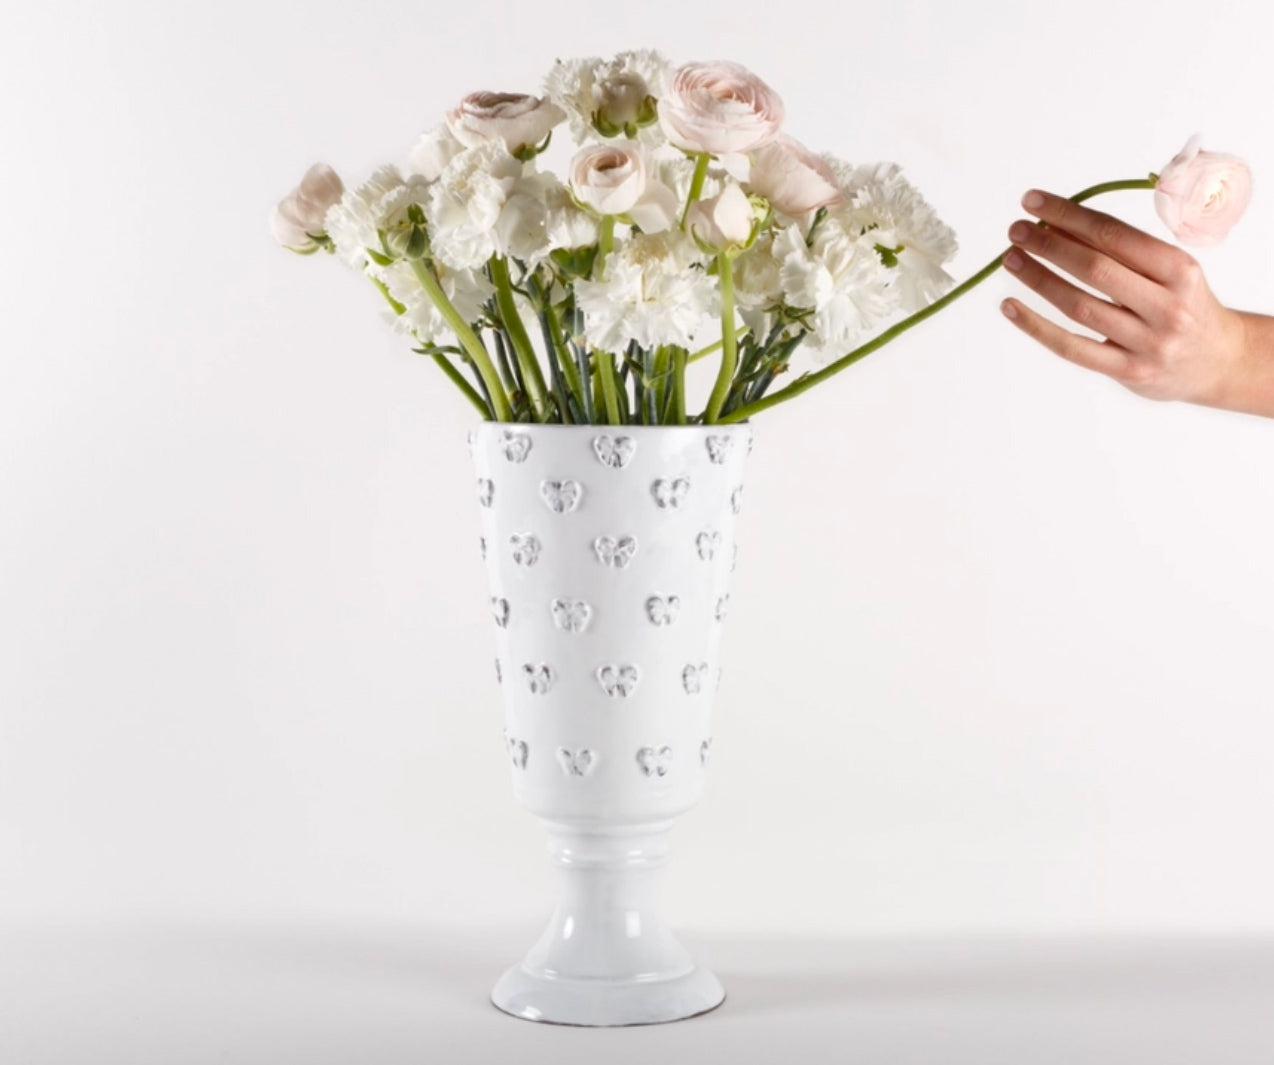 Nœud-Nœud footed vase